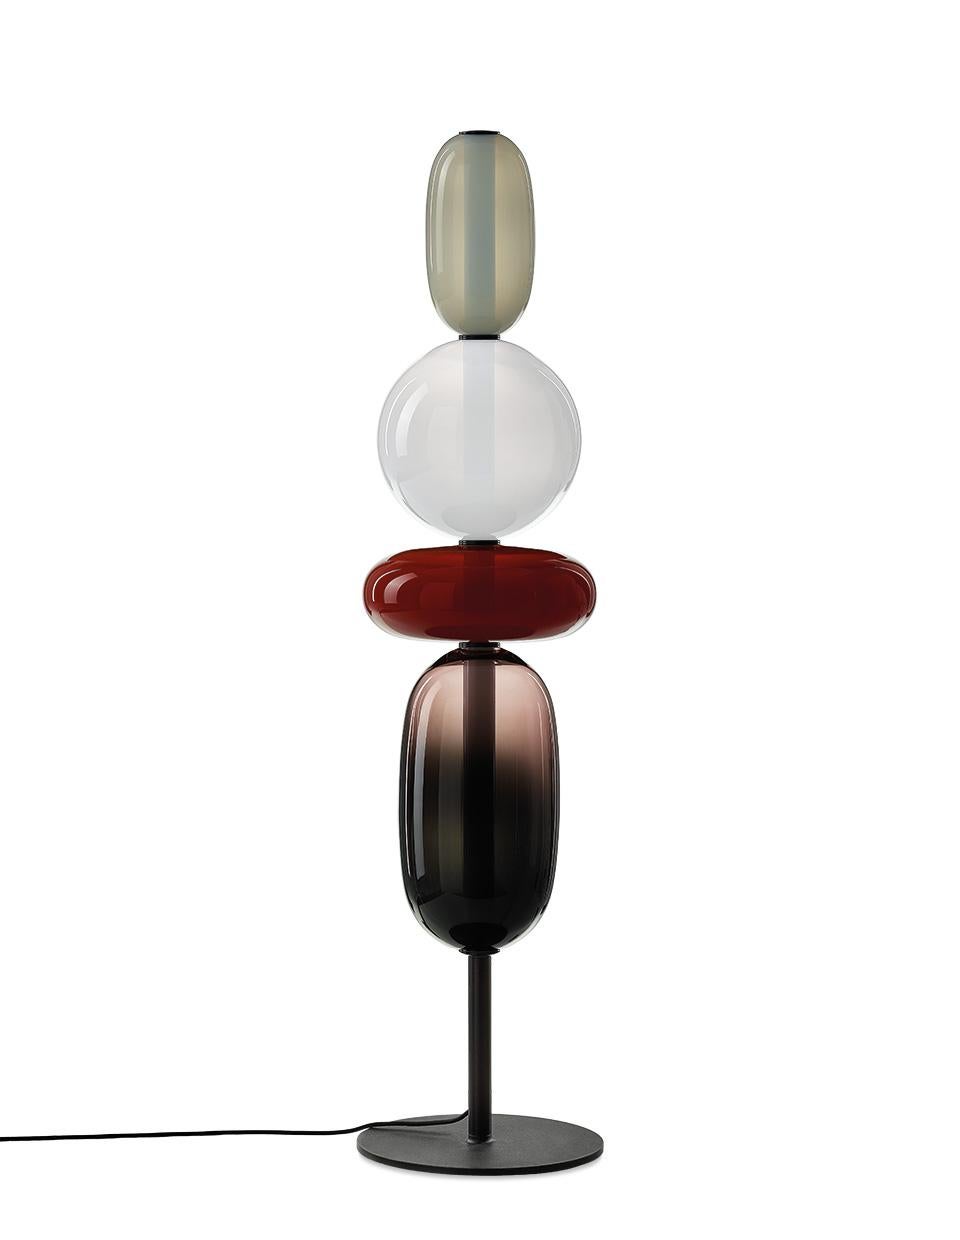 Zeitgenössische Stehleuchte aus geblasenem Kristallglas - Pebbles von Boris Klimek für Bomma

Kieselsteine erinnern an besondere Momente oder Lieblingsorte. Ihre vielfältigen Formen und Farben haben BOMMA zu einer spielerischen Kollektion